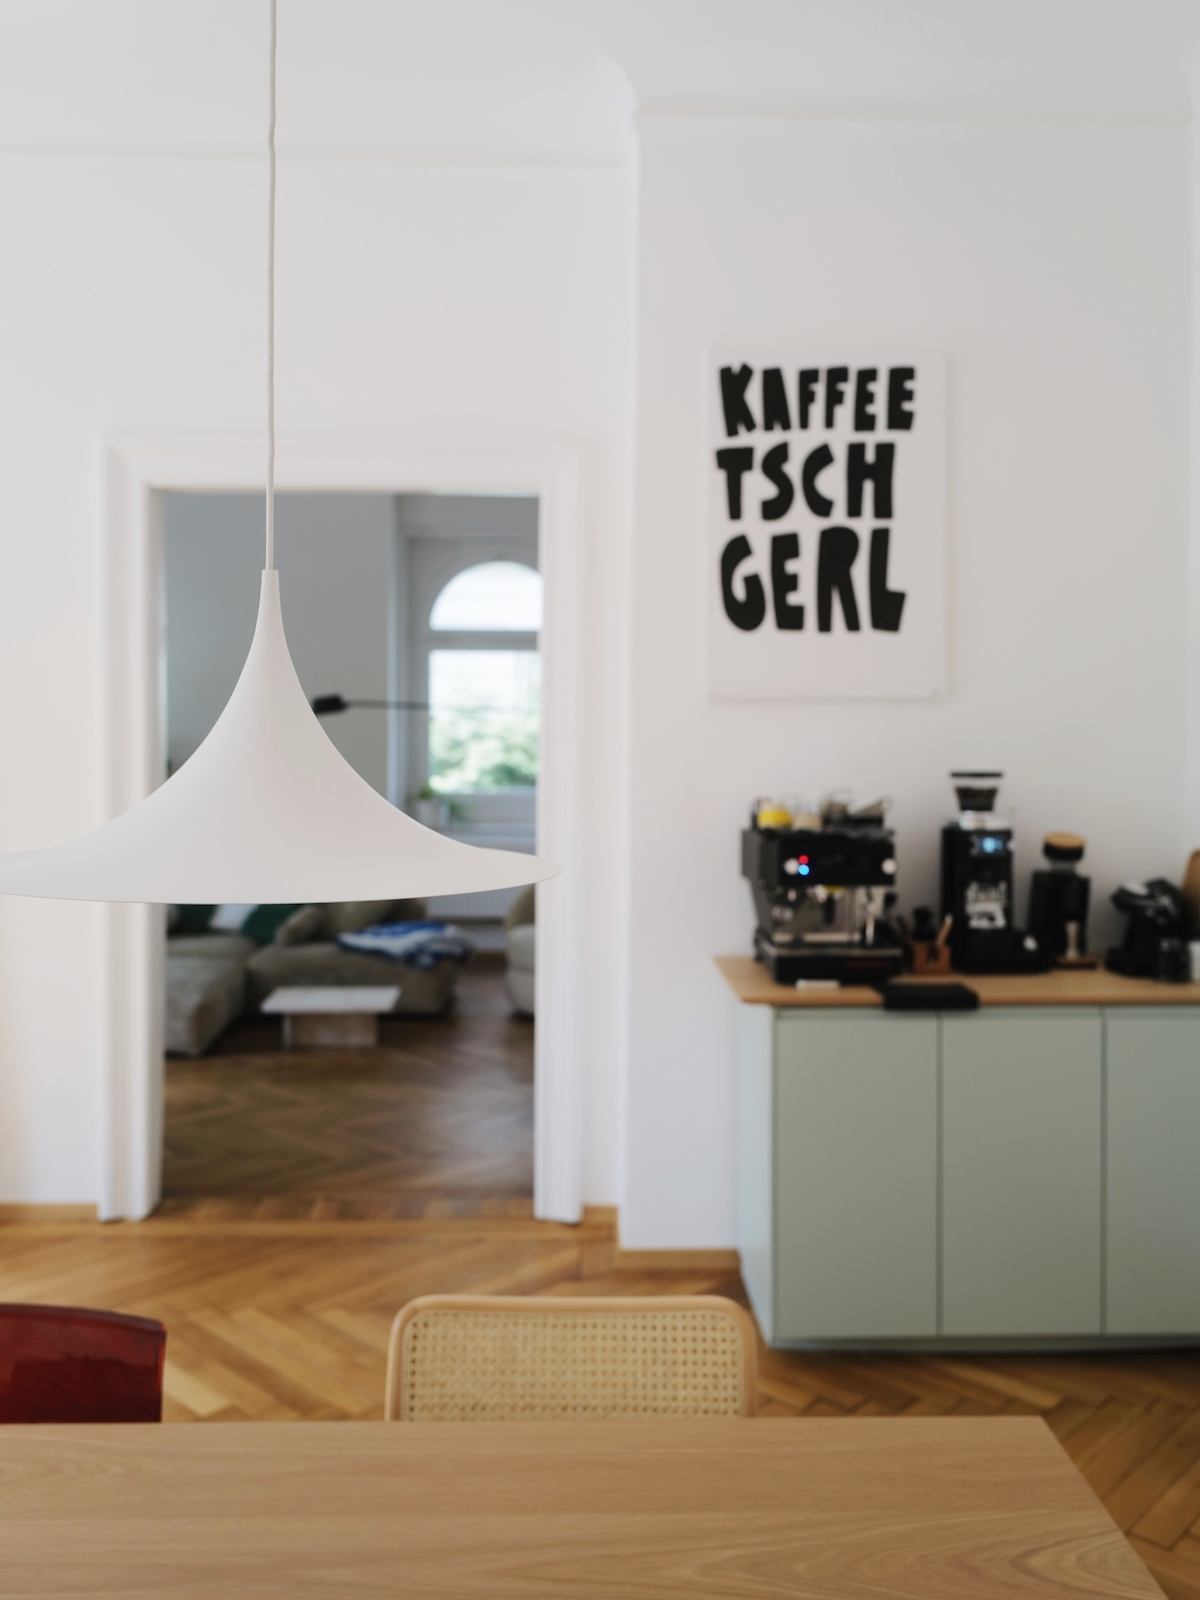 Eine weiße Pendelleuchte hängt über einem Esstisch, im Hintergrund steht eine Kaffeetheke und ein Poster mit dem Text "Kaffee Tschgerl" hängt darüber. 